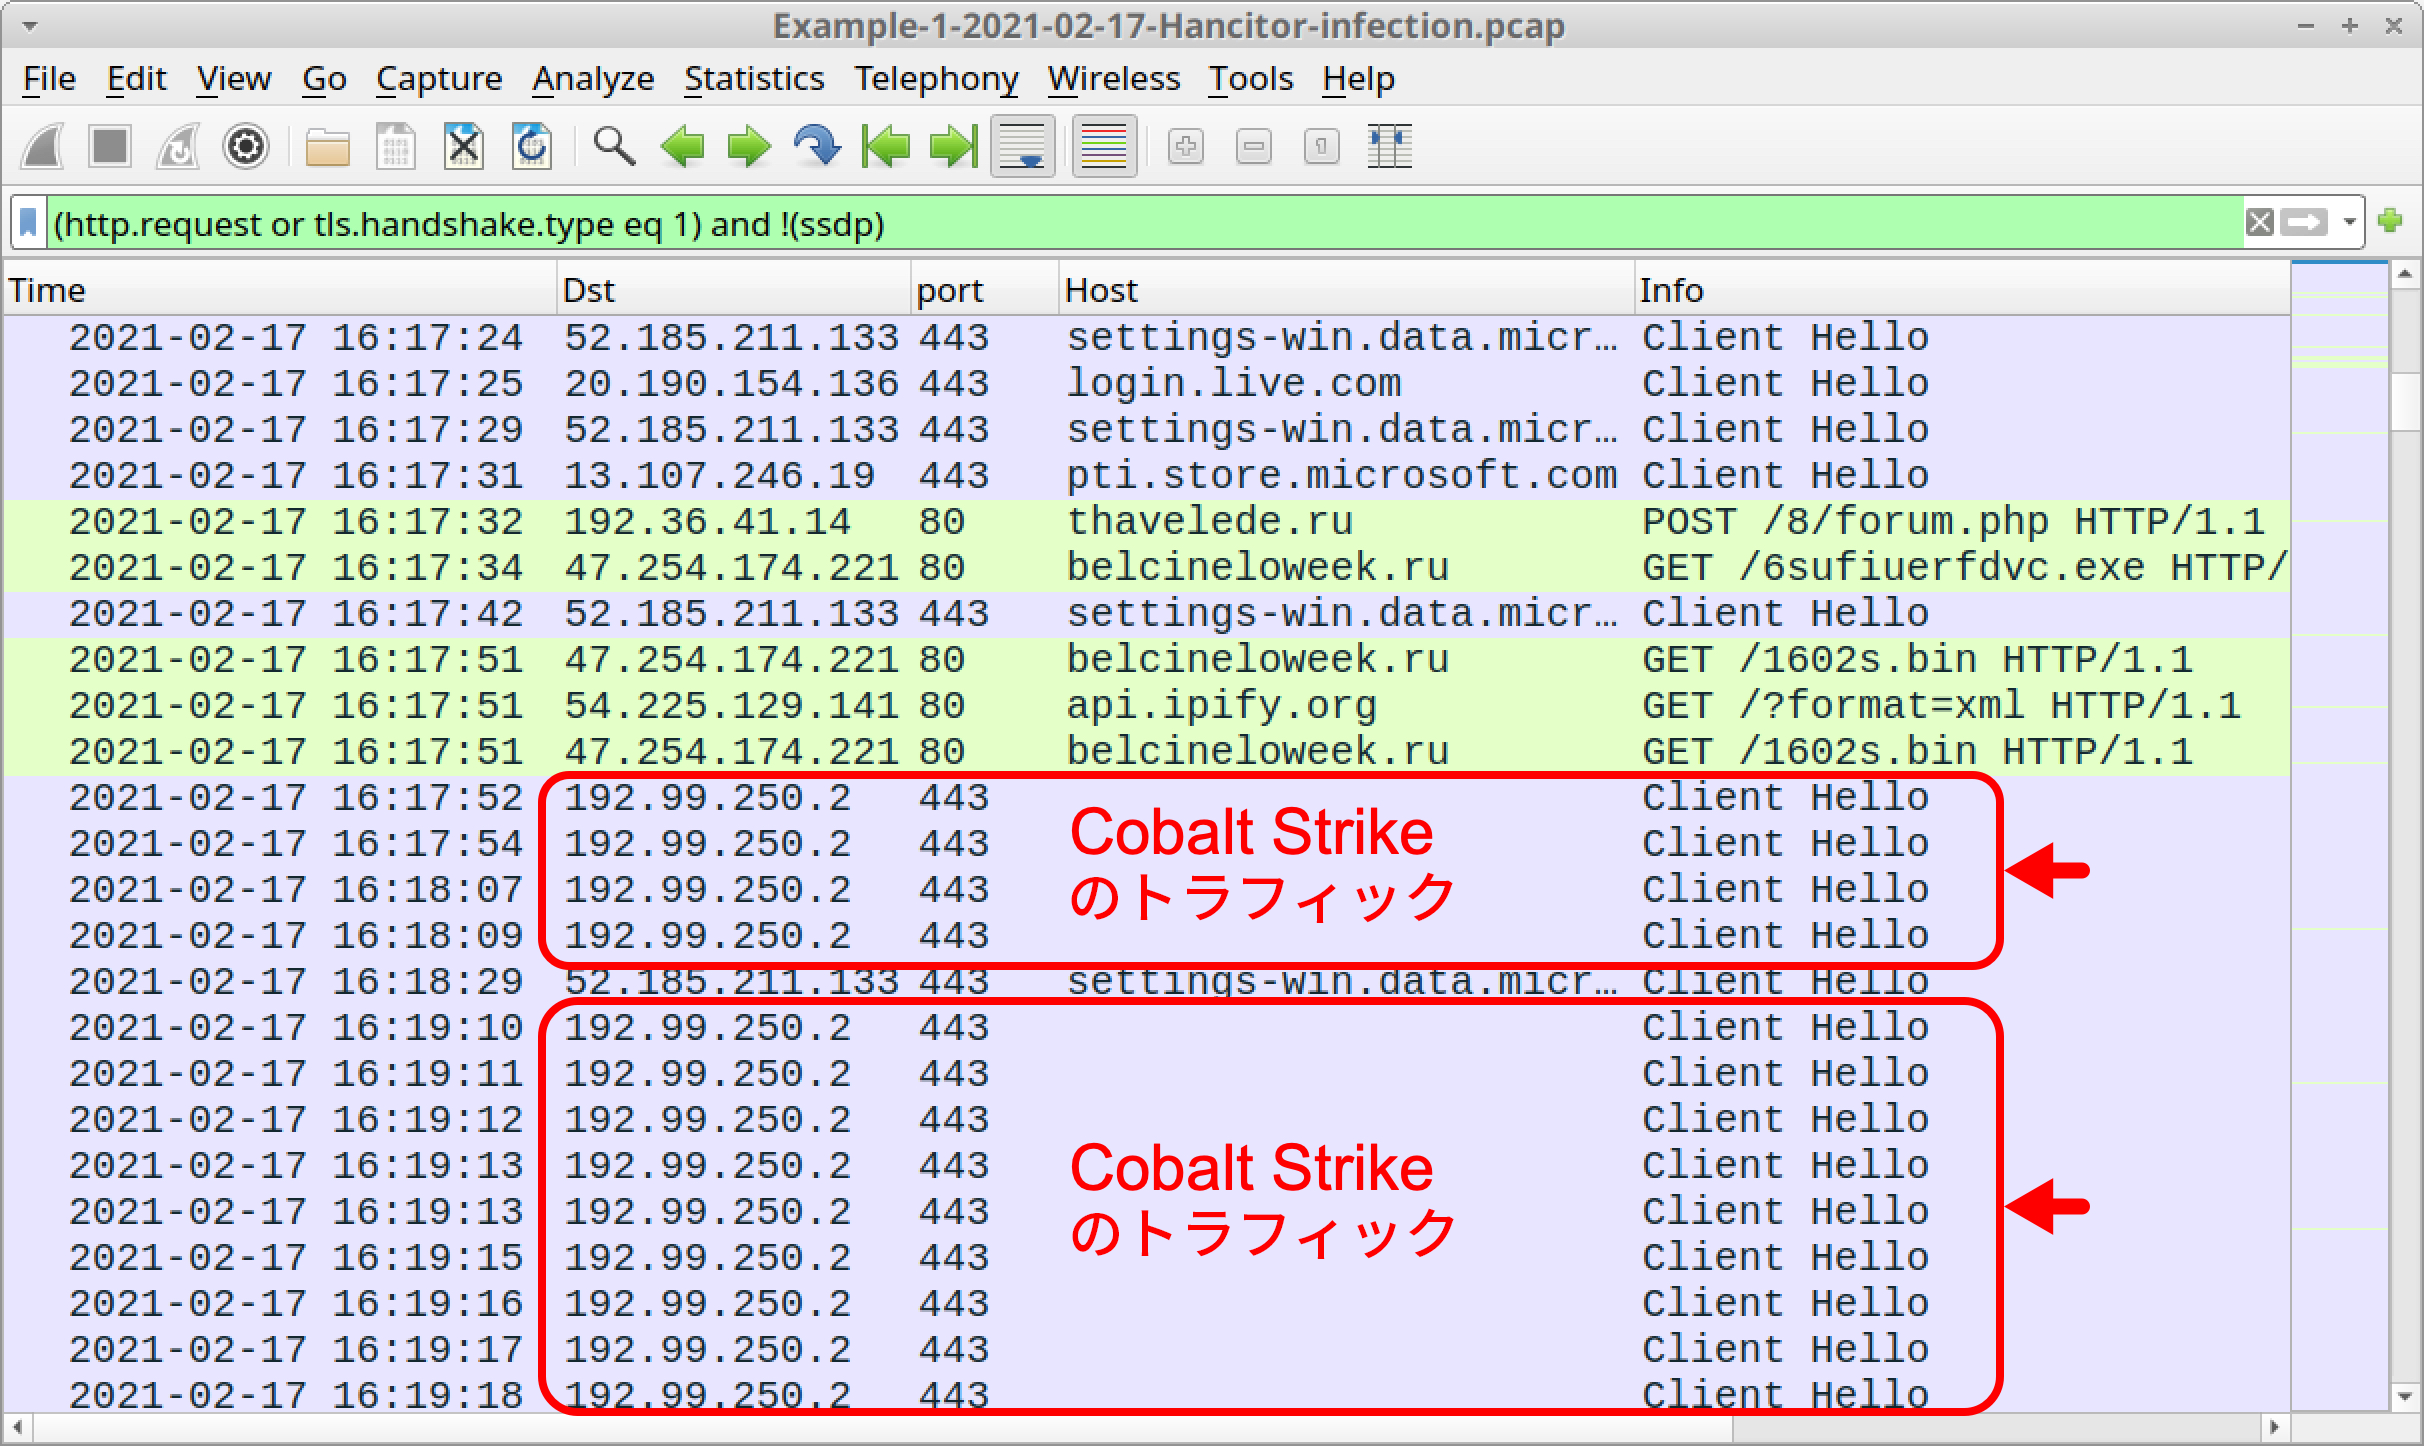 赤い矢印は、Cobalt Strikeによって引き起こされた感染Windowsホストからのトラフィックに関連するWireshark列表示の行を示しています。 